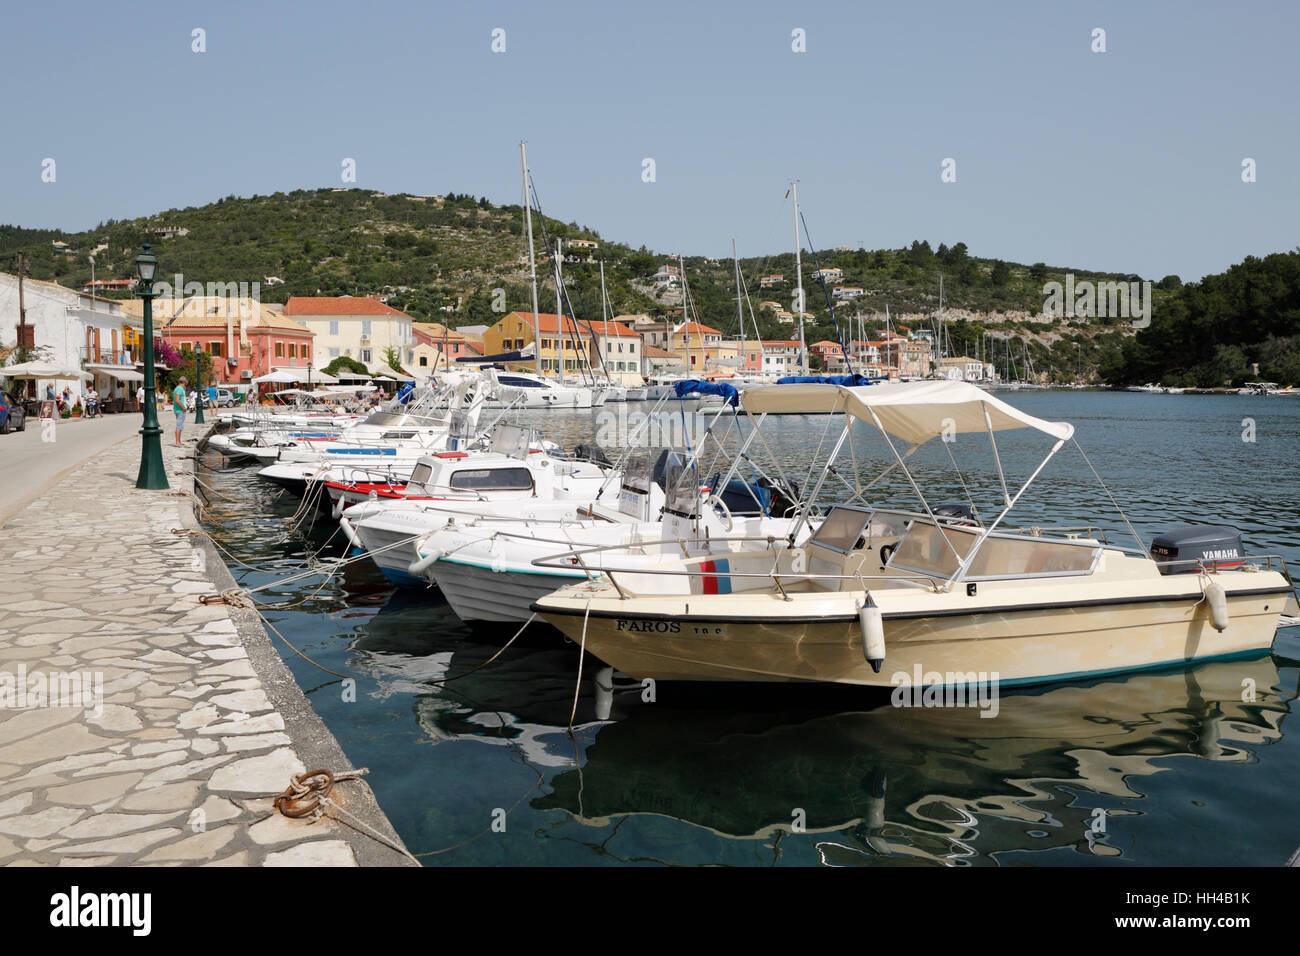 Port de Gaios ville, Paxos, îles Ioniennes, îles grecques, Grèce, Europe Banque D'Images